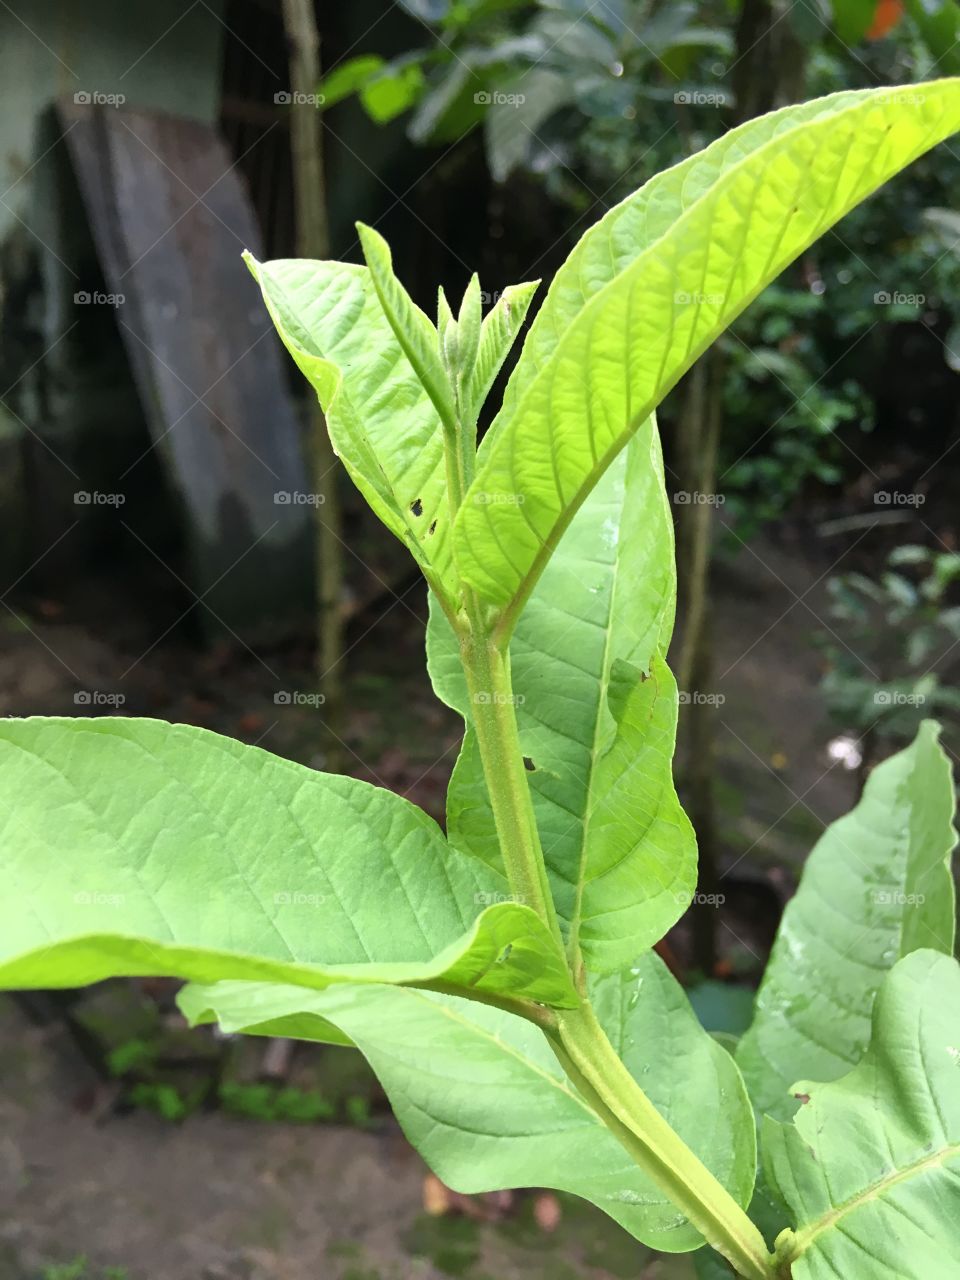 Goava leaf